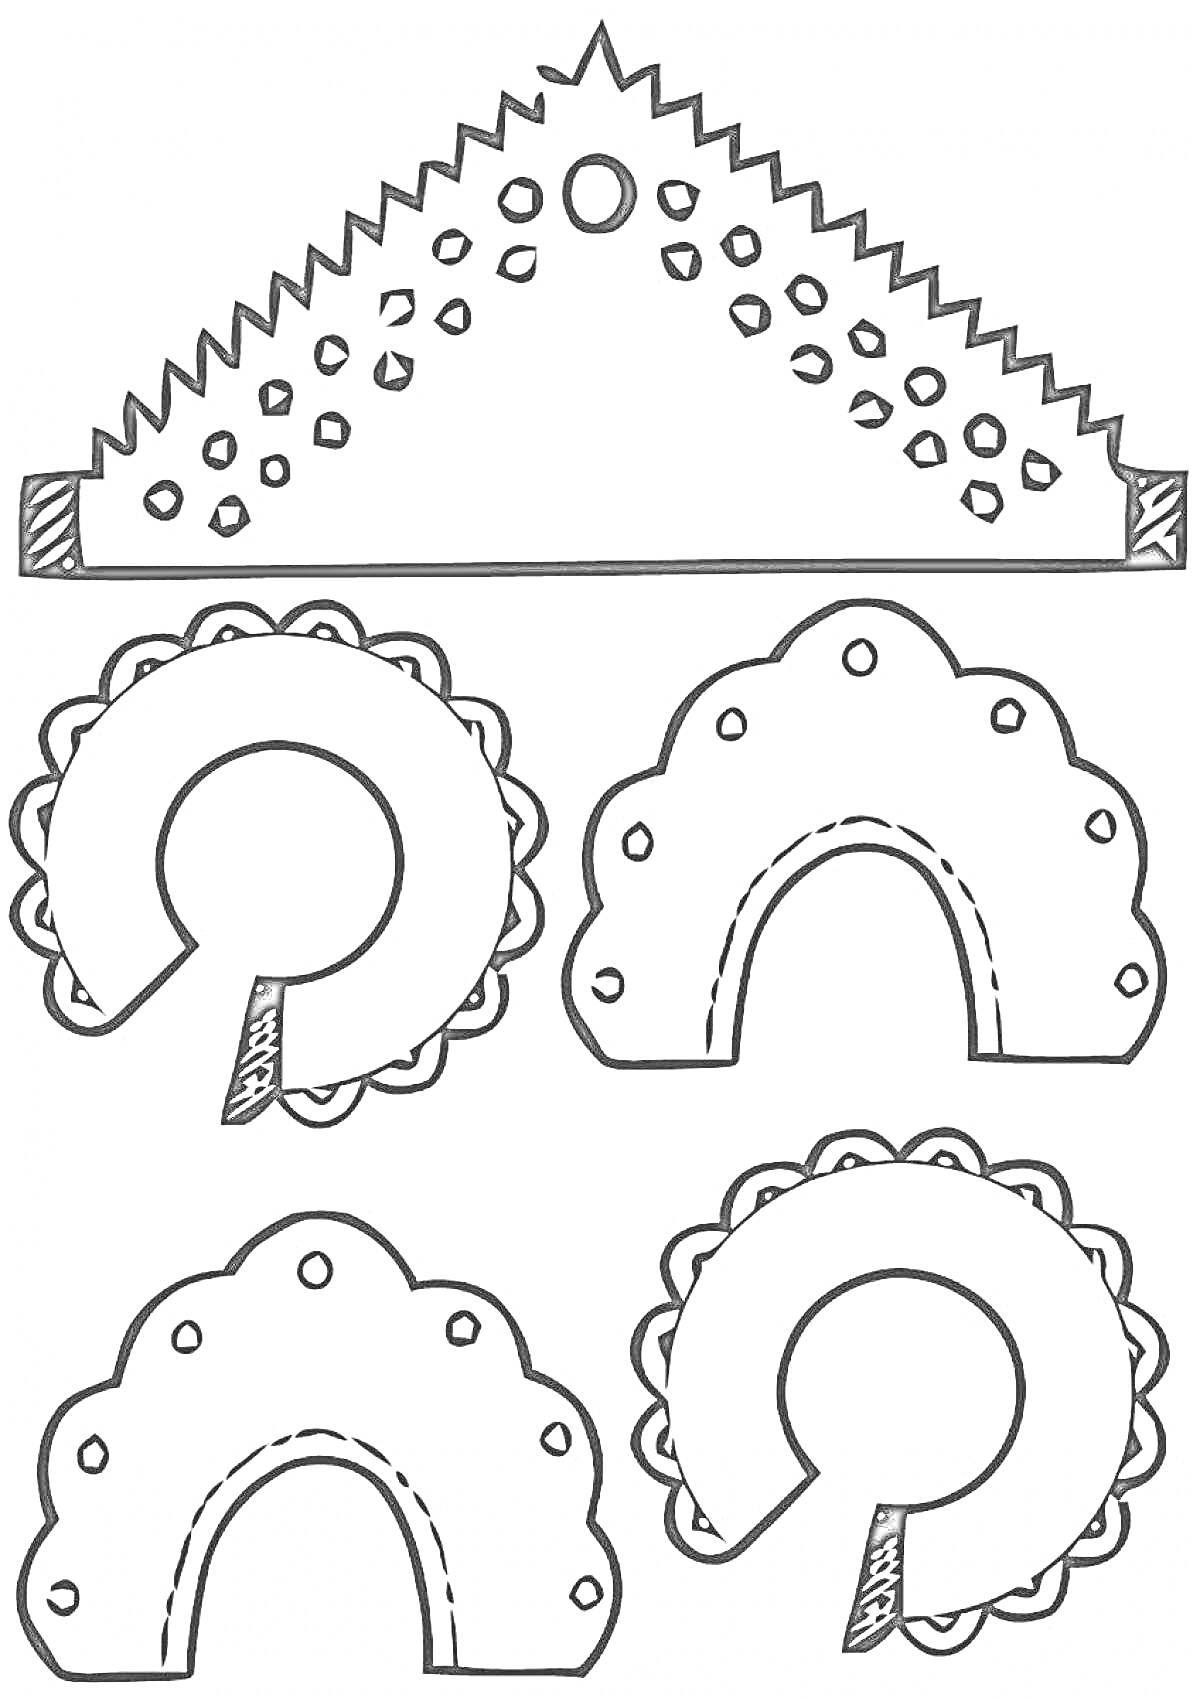 Раскраска Изображение различных типов кокошников с узорами и декоративными элементами